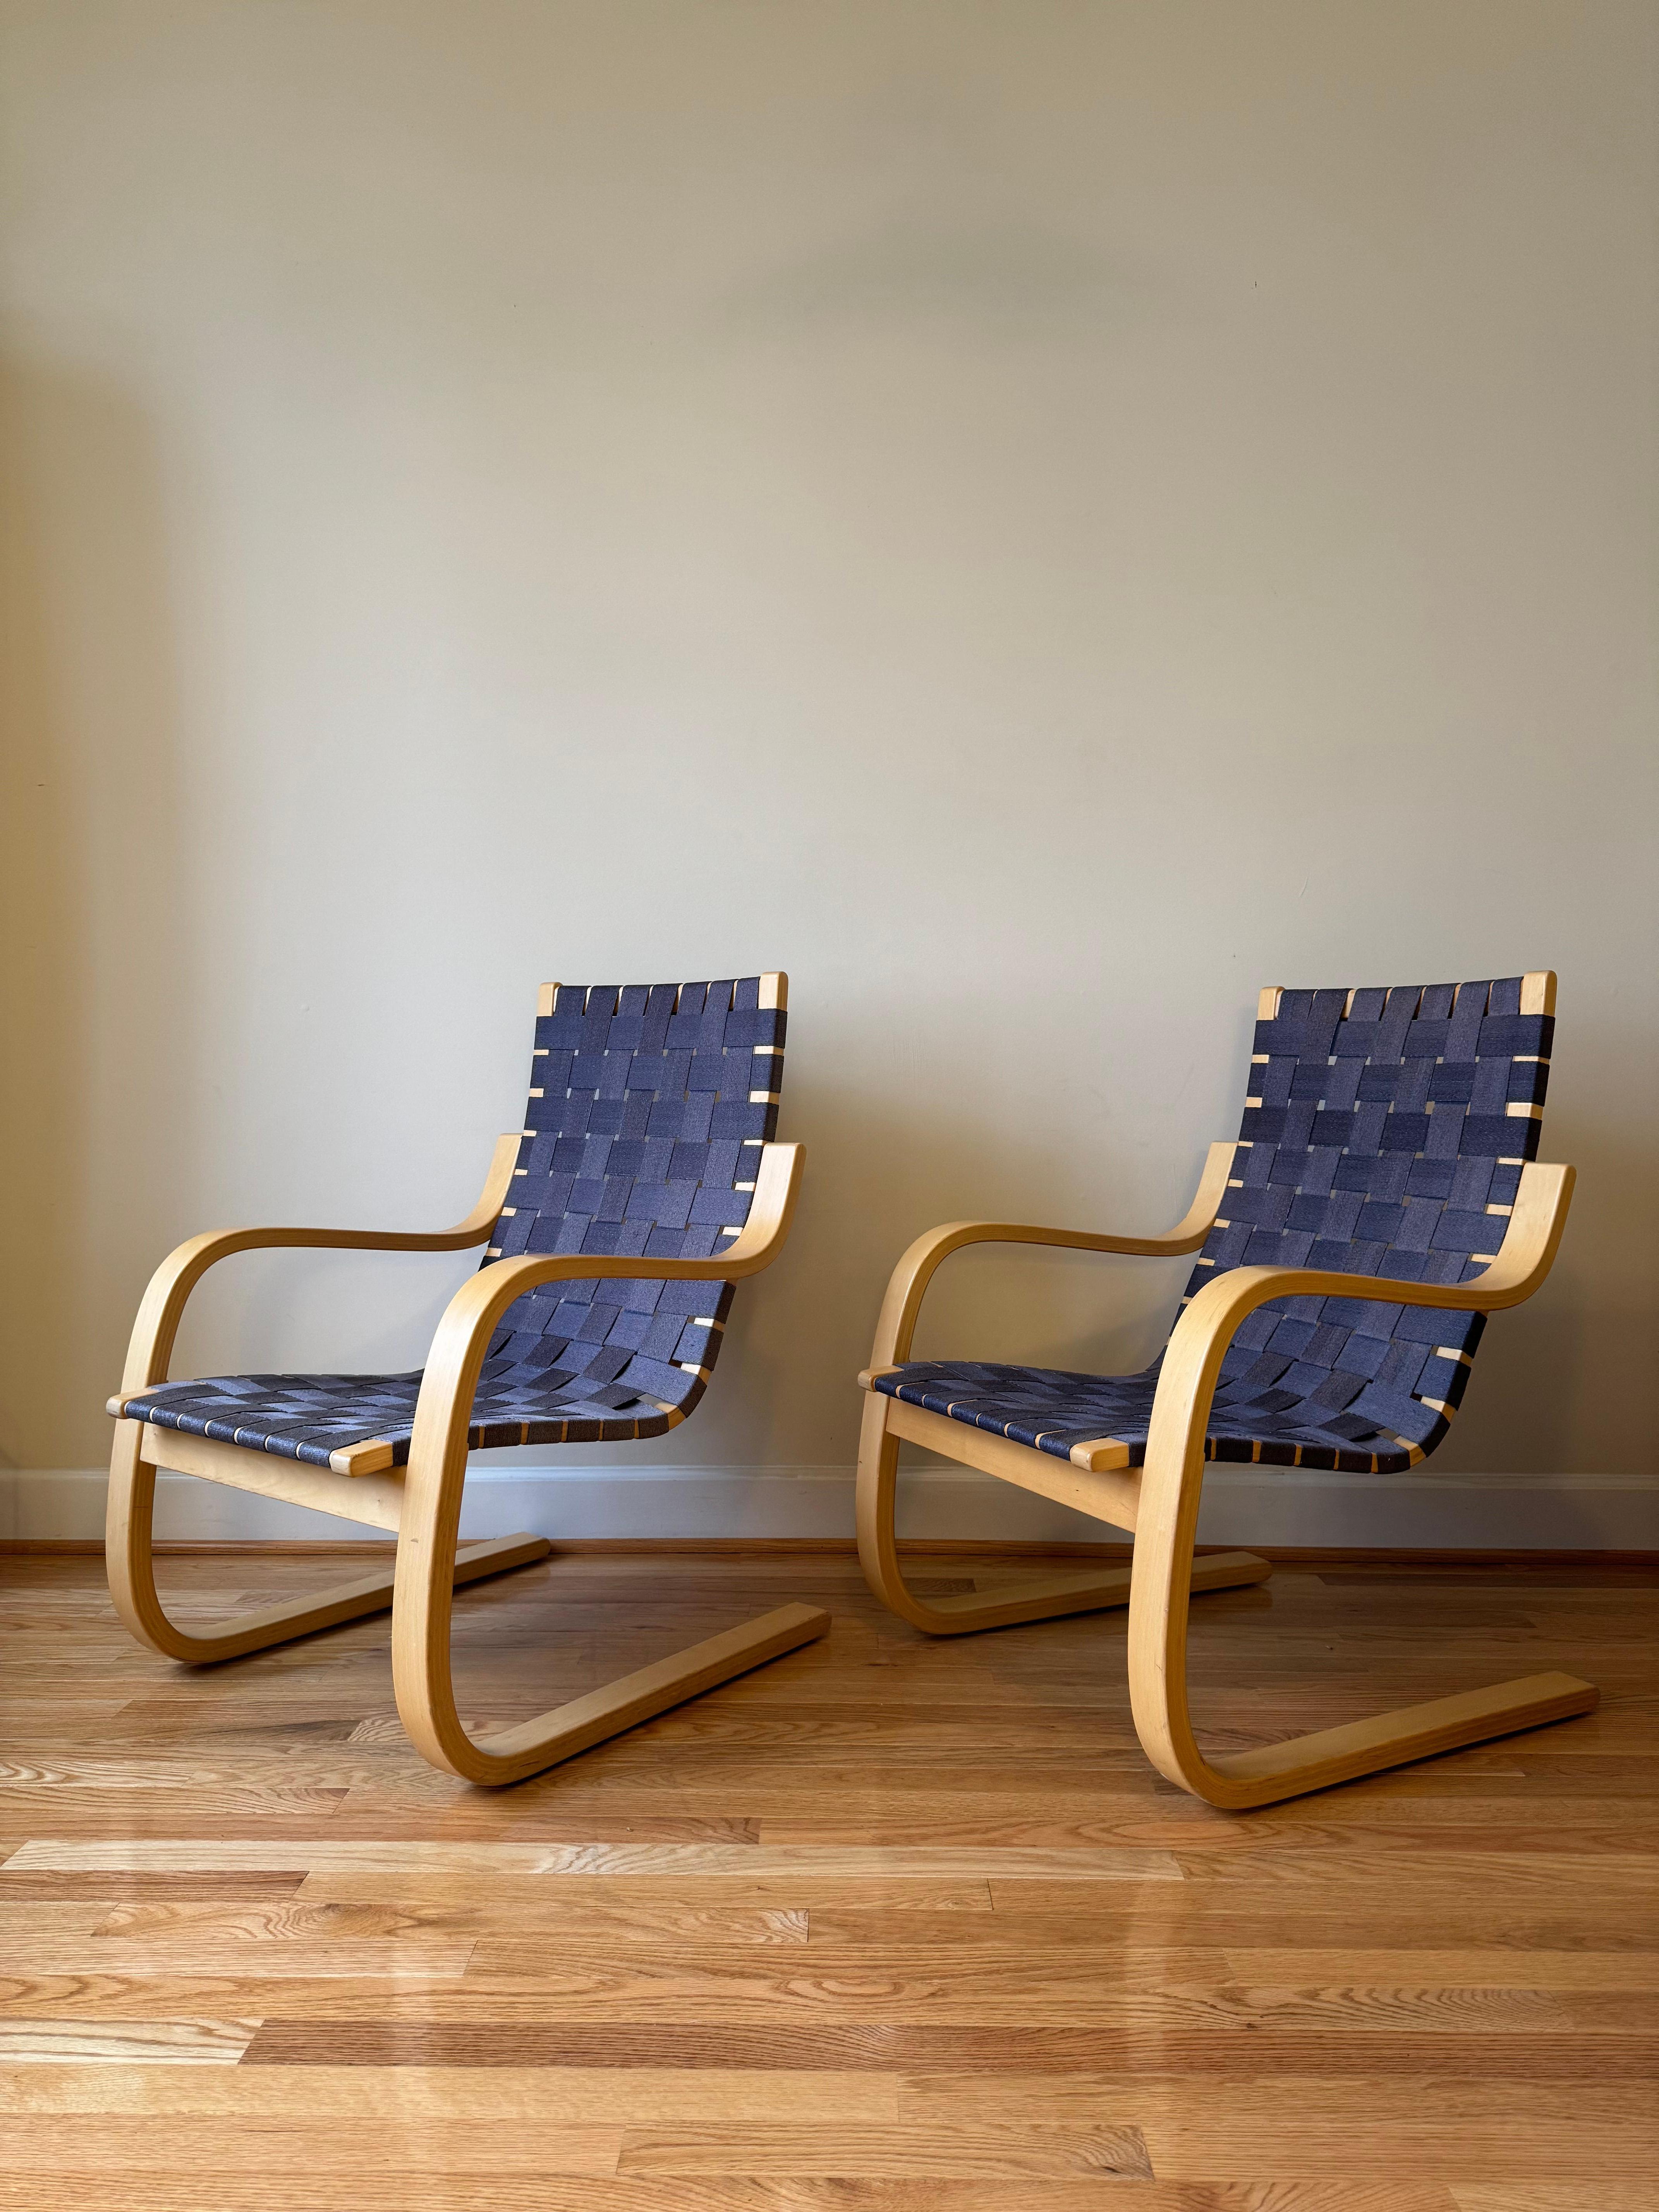 Der Sessel 406 verbindet schlichte Eleganz mit Komfort. 
Da sich das Holz im Laufe der Zeit verändert, werden die Armlehnen aus einem einzigen Stück geformt, das anschließend in zwei Hälften geteilt wird, so dass der Stuhl mit zunehmendem Alter